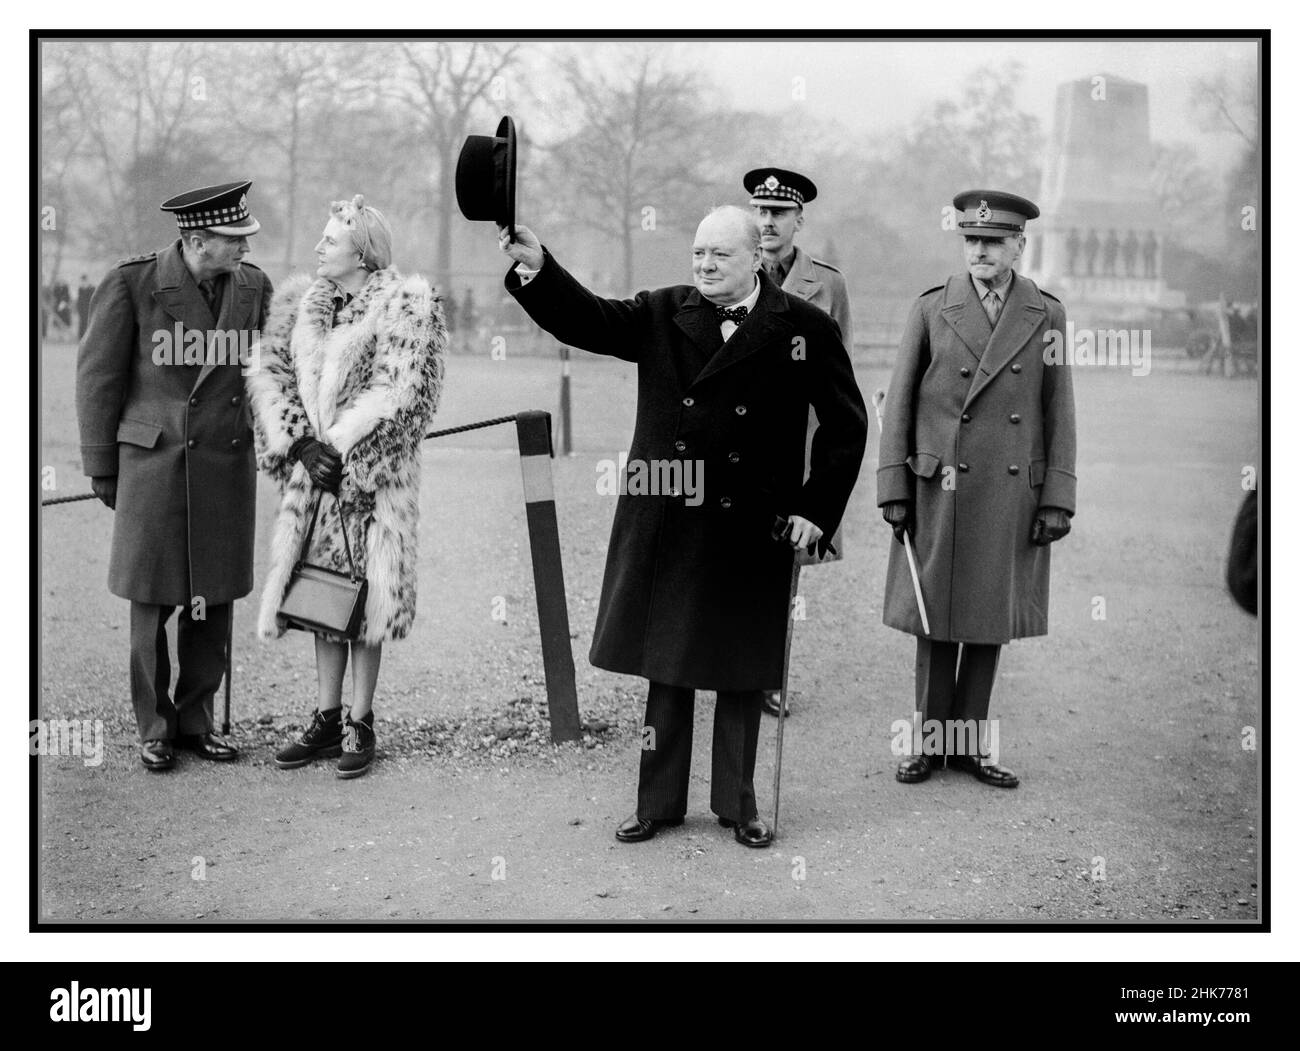 WW2 Winston Churchill der britische Premierminister aus der Kriegszeit lässt während einer Inspektion des amerikanischen Squadrons der Heimatgarde 1st bei der Horse Guards Parade in London am 9. Januar 1941 seinen Hut aufschlagen. Propaganda-Moral des Zweiten Weltkriegs, die das offizielle Image erhöht Stockfoto